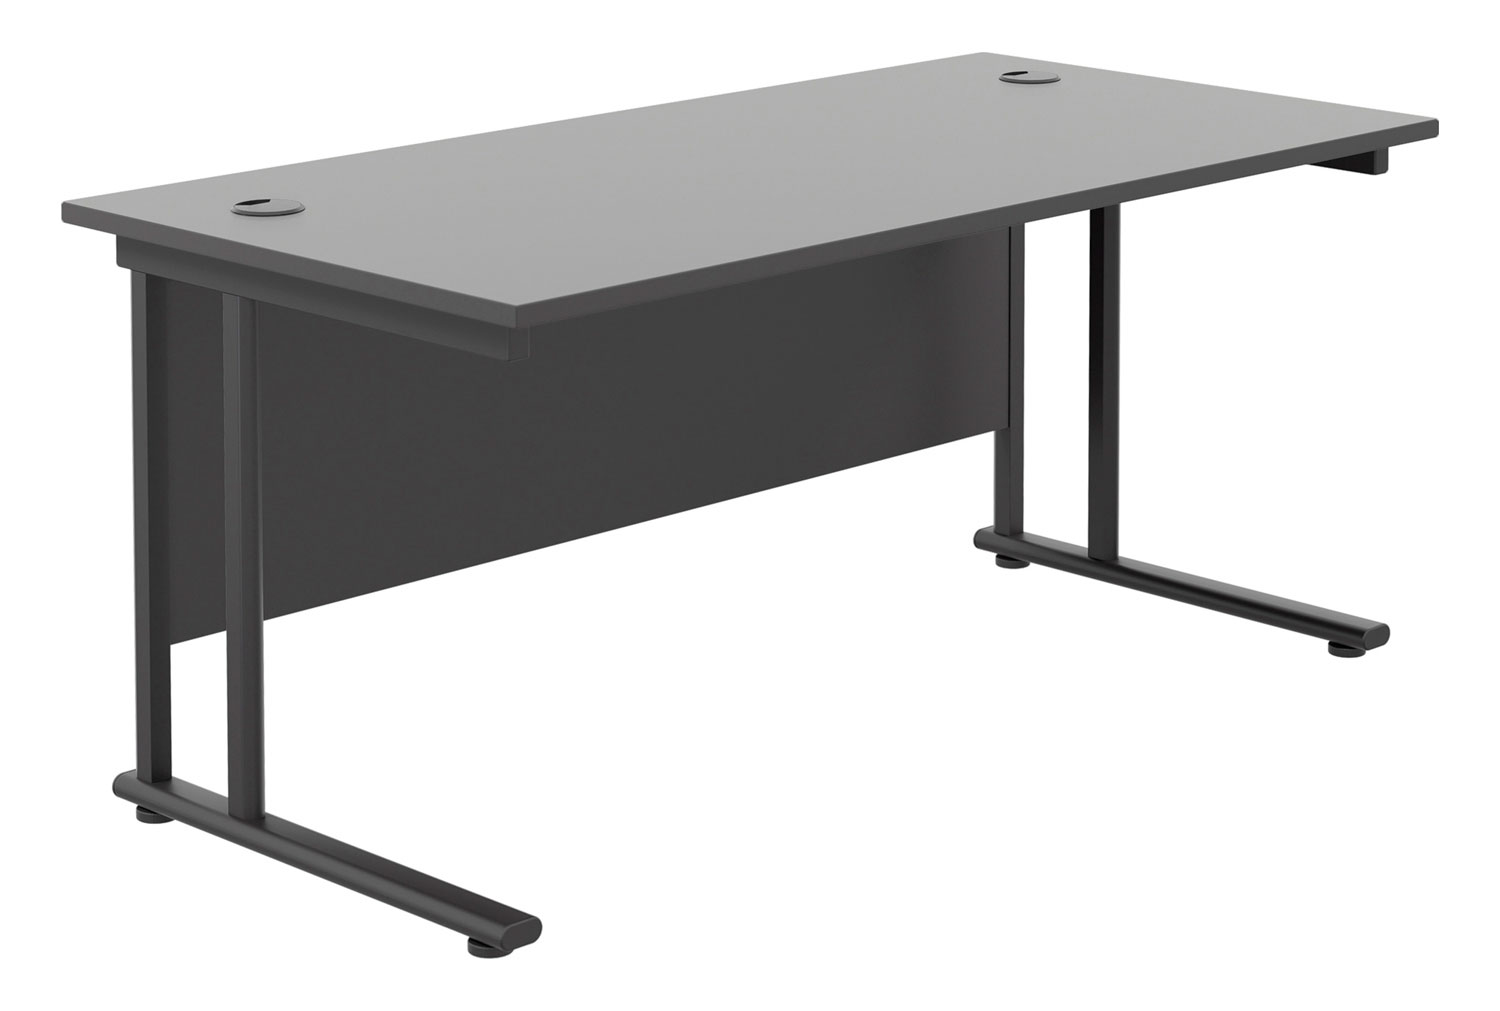 All Black Double C-Leg Rectangular Office Desk, 180wx80dx73h (cm), Fully Installed